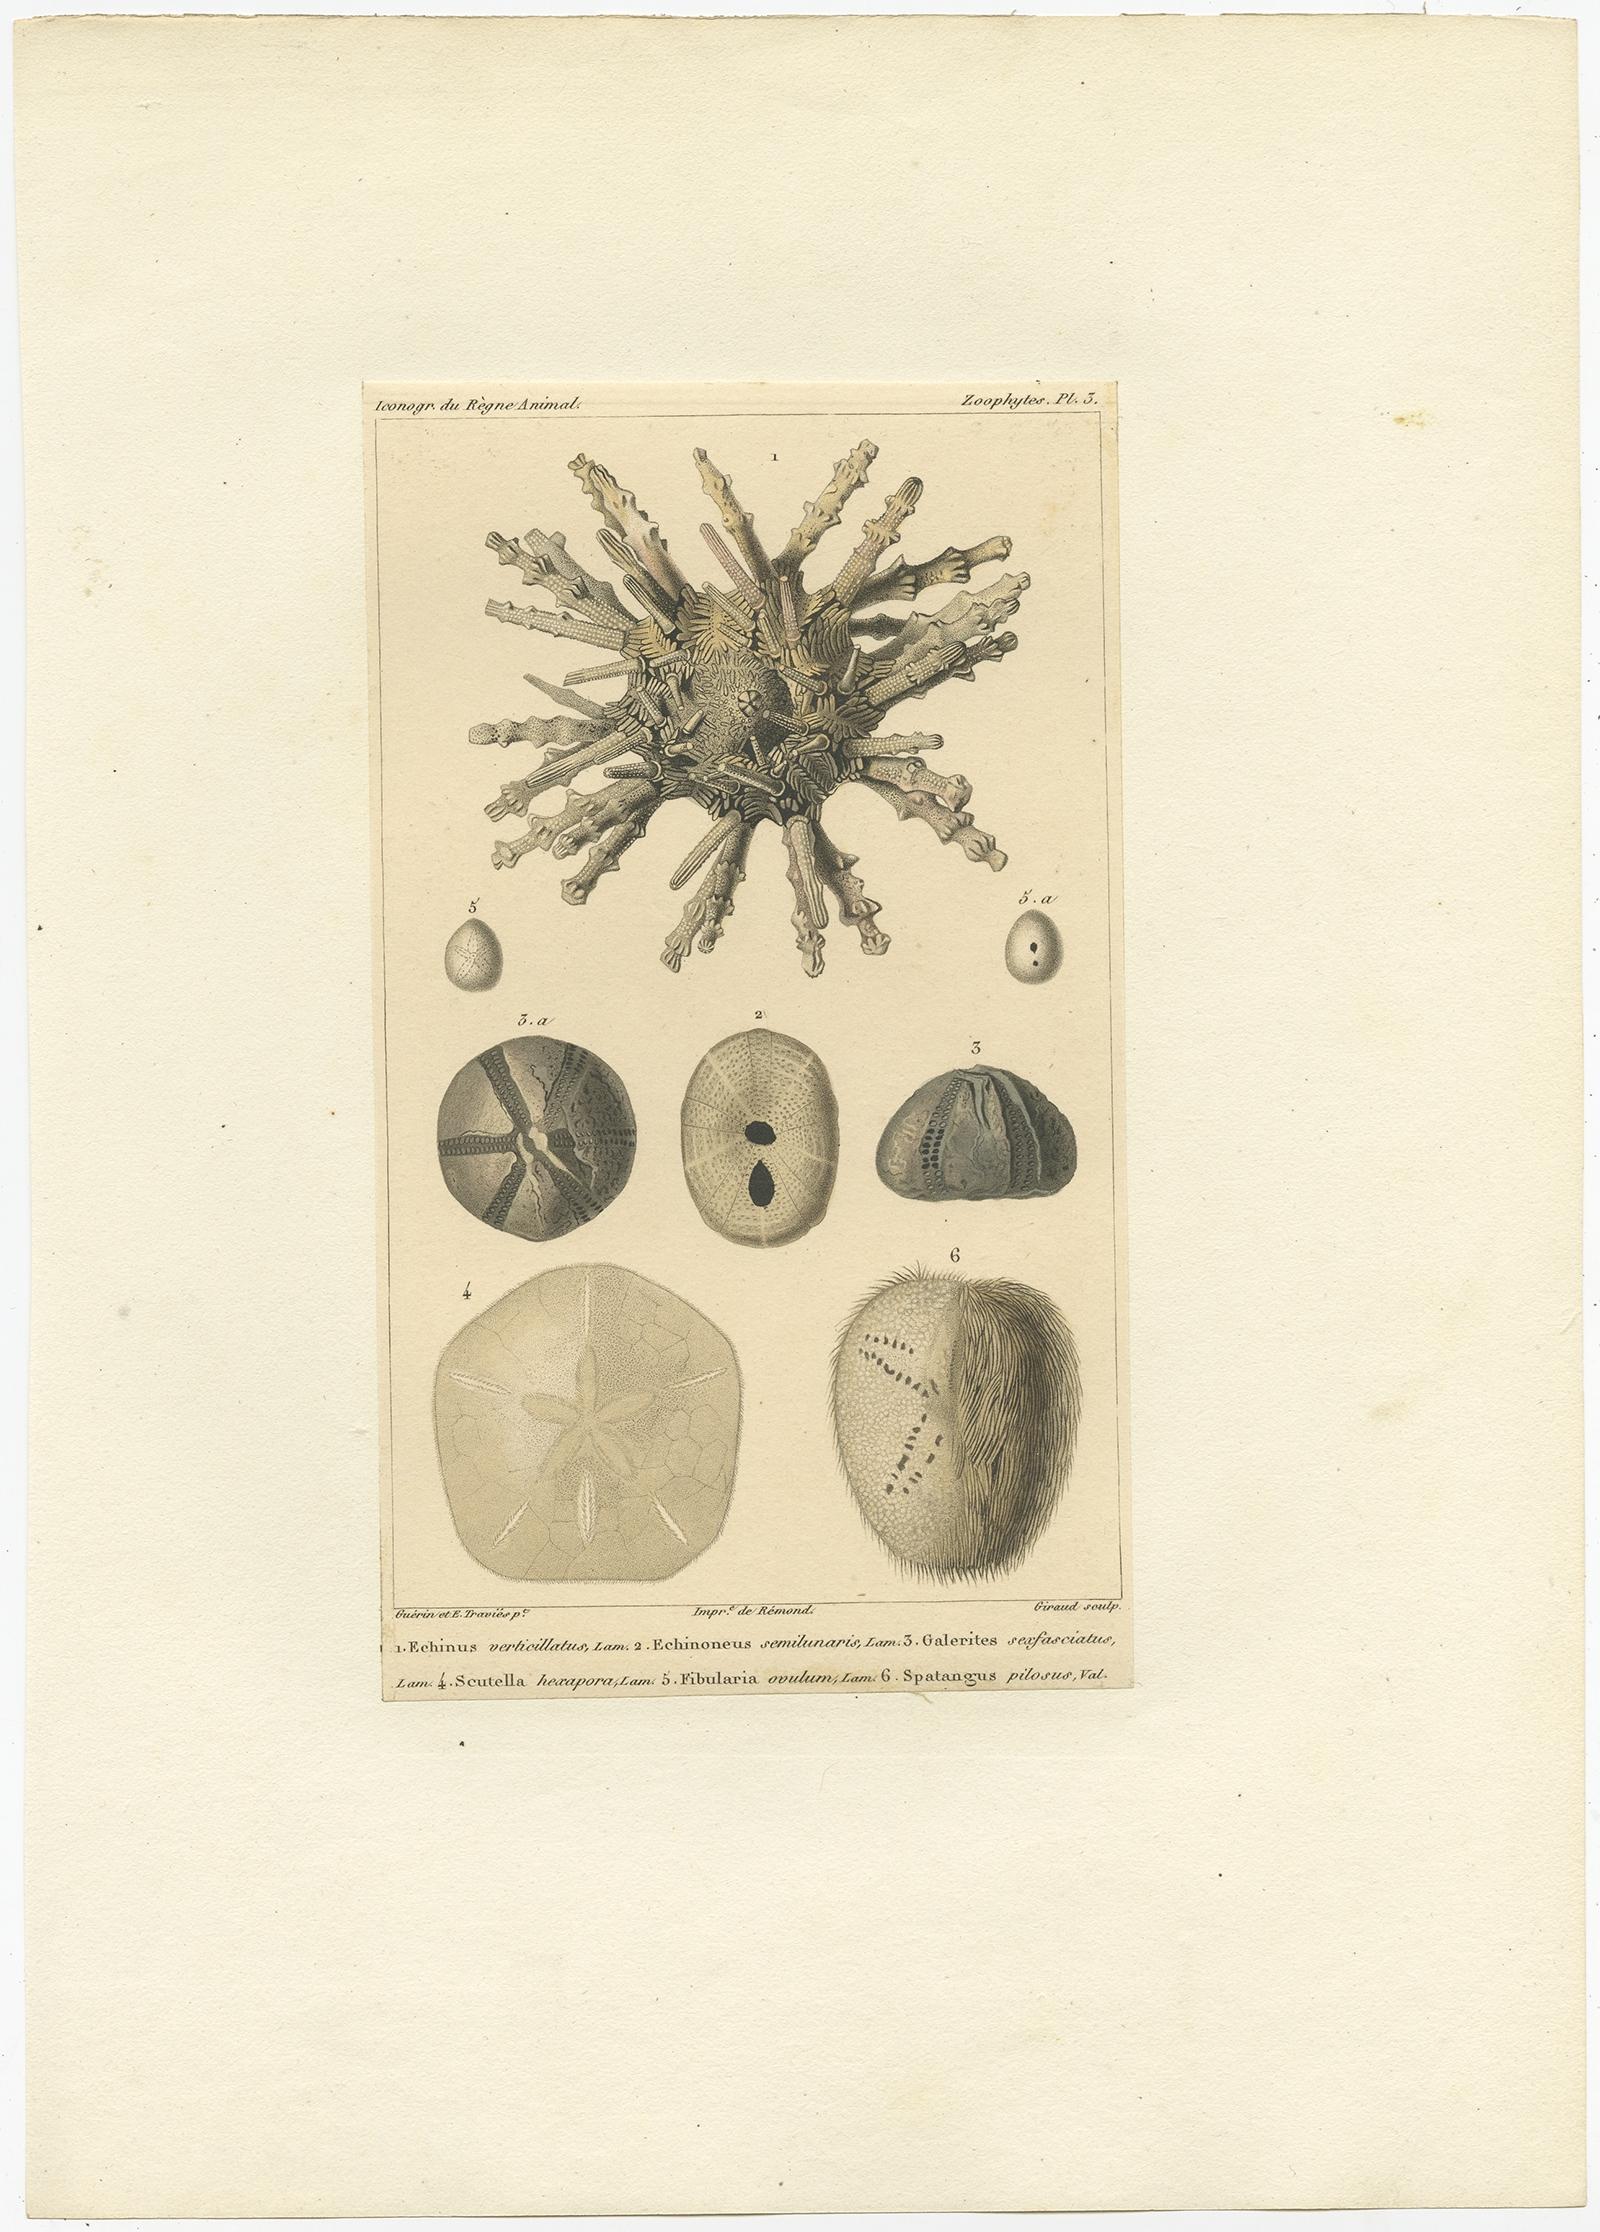 Antiker Druck mit dem Titel '1. Echinus verticillatus 2. Echinoneus semilunaris (..)'. 

Alter Druck des Sanddollars und anderer Seeigel. Dieser Druck stammt aus 